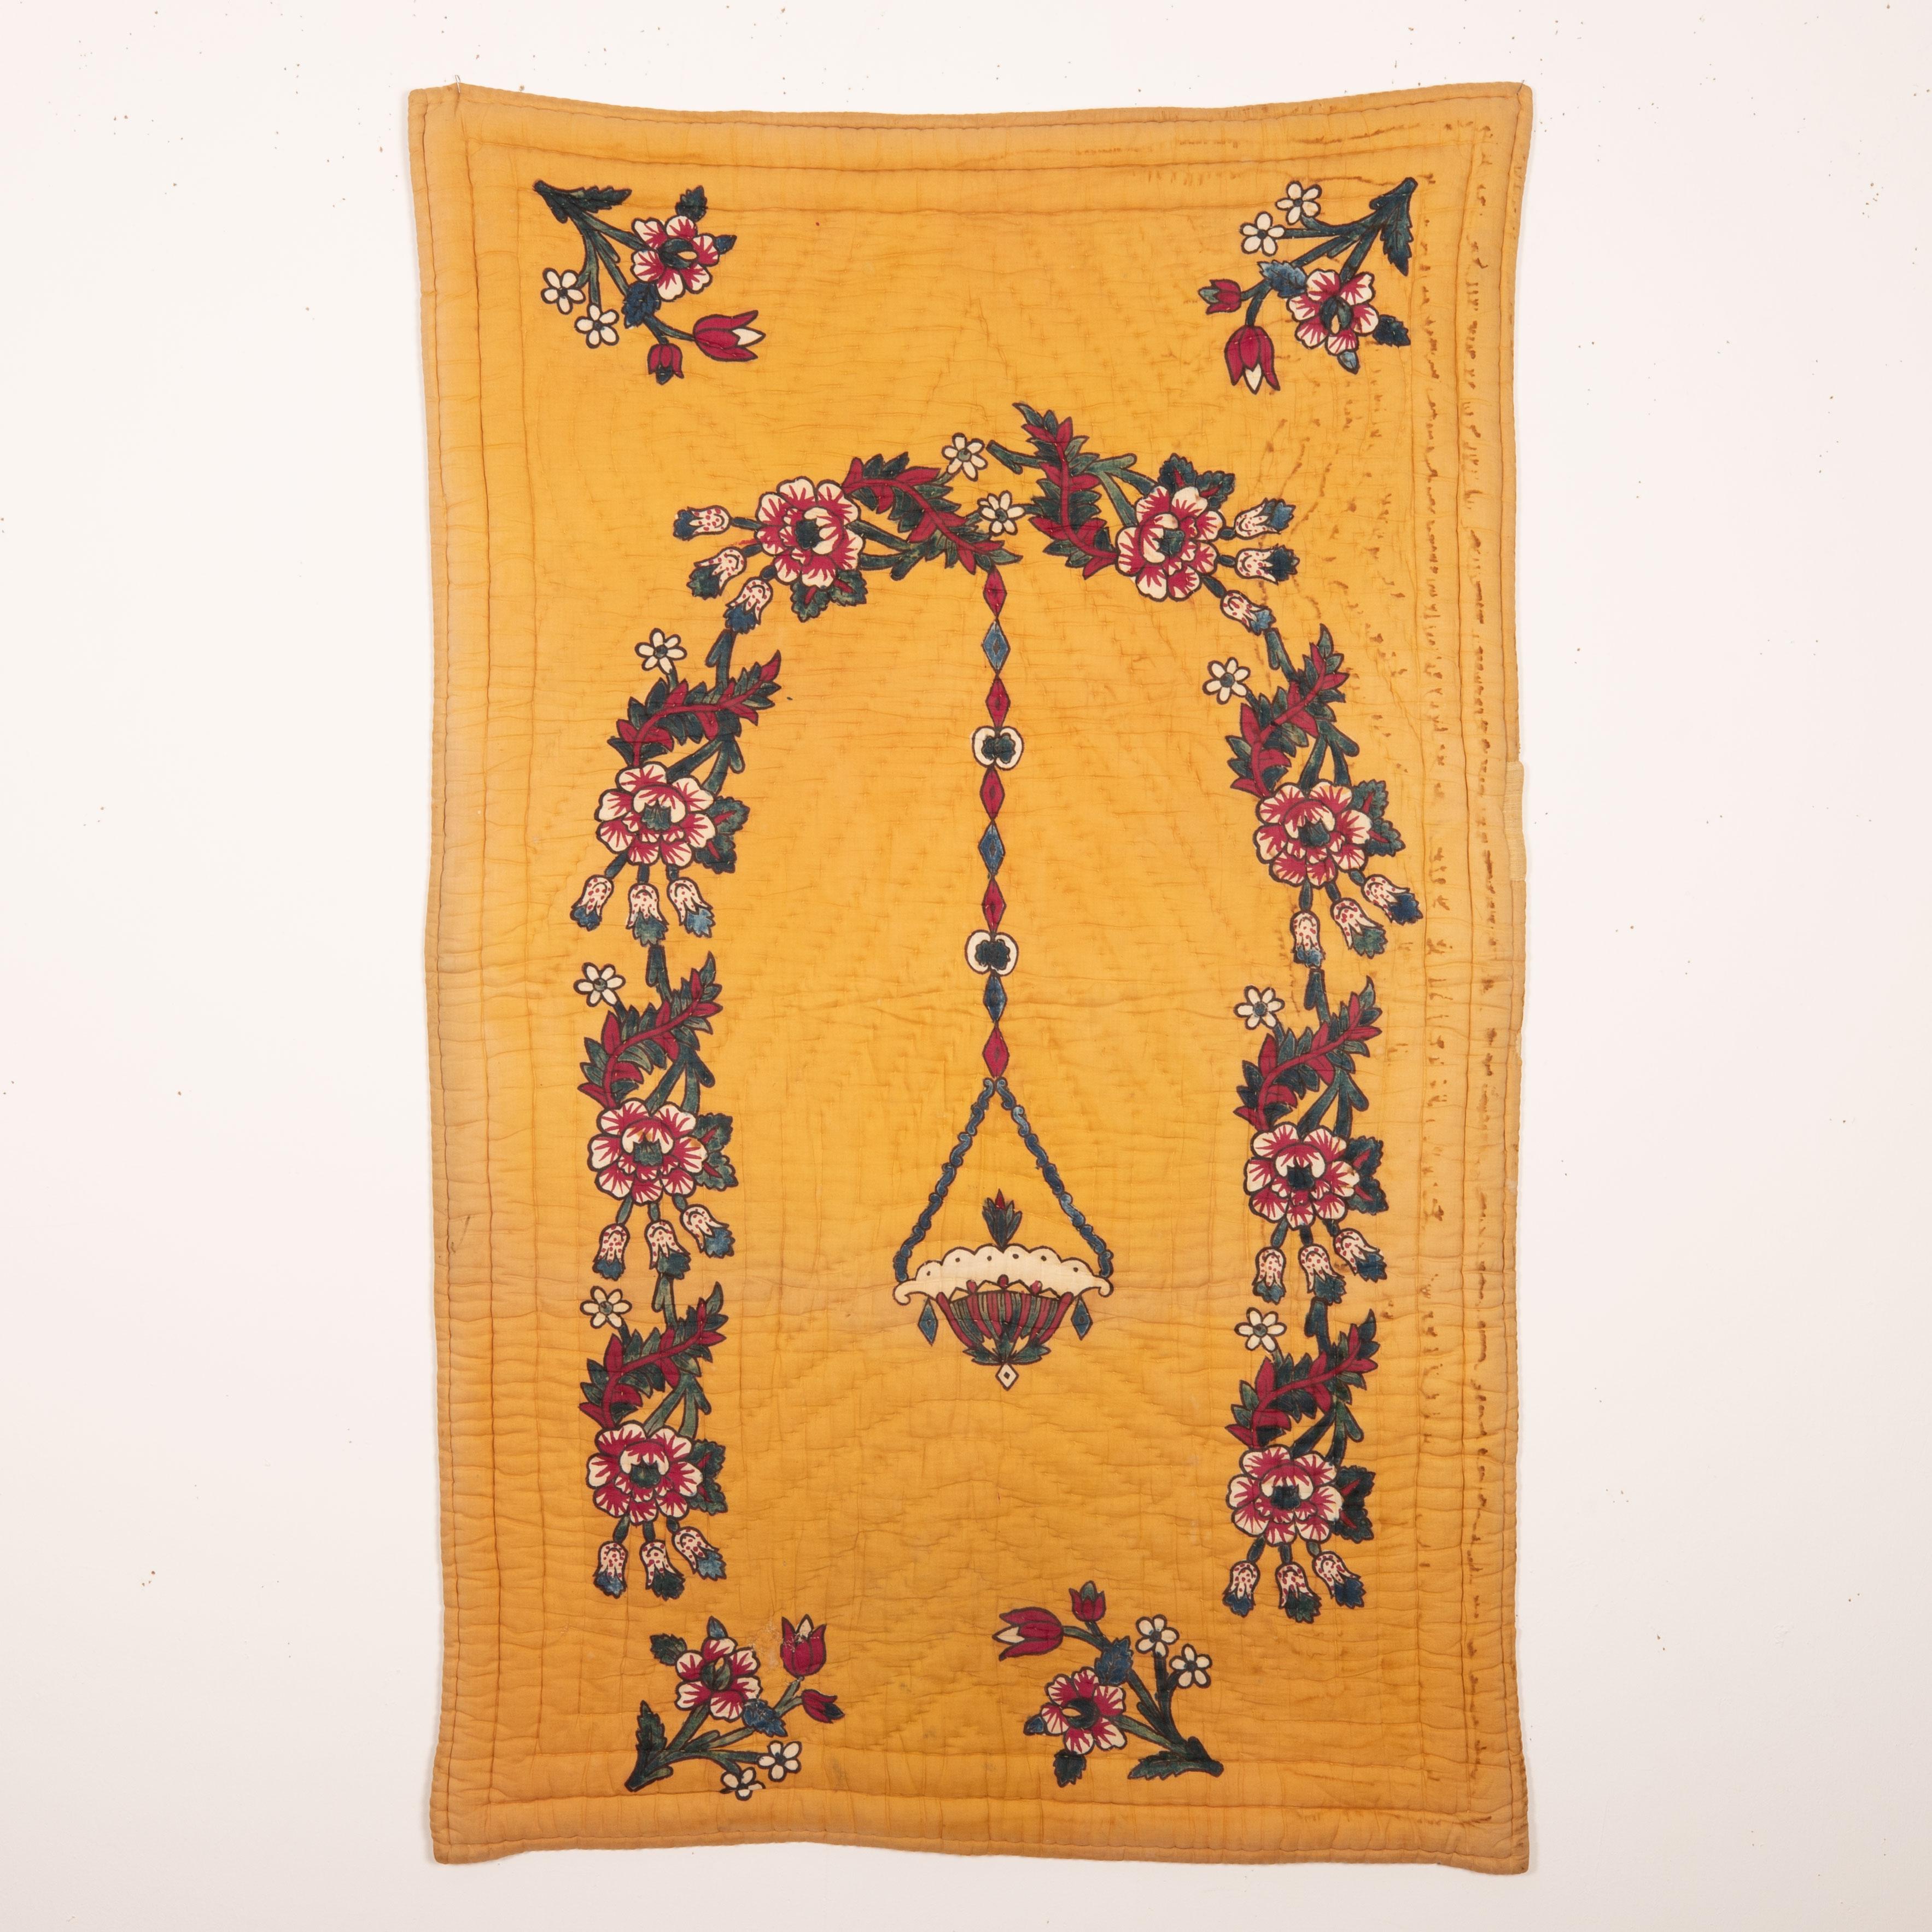 Der Handblockdruck ist eines der Wahrzeichen der materiellen Kultur Westanatoliens. Diese Quilts wurden entweder als Gebetsteppiche oder als Wandbehang verwendet.

